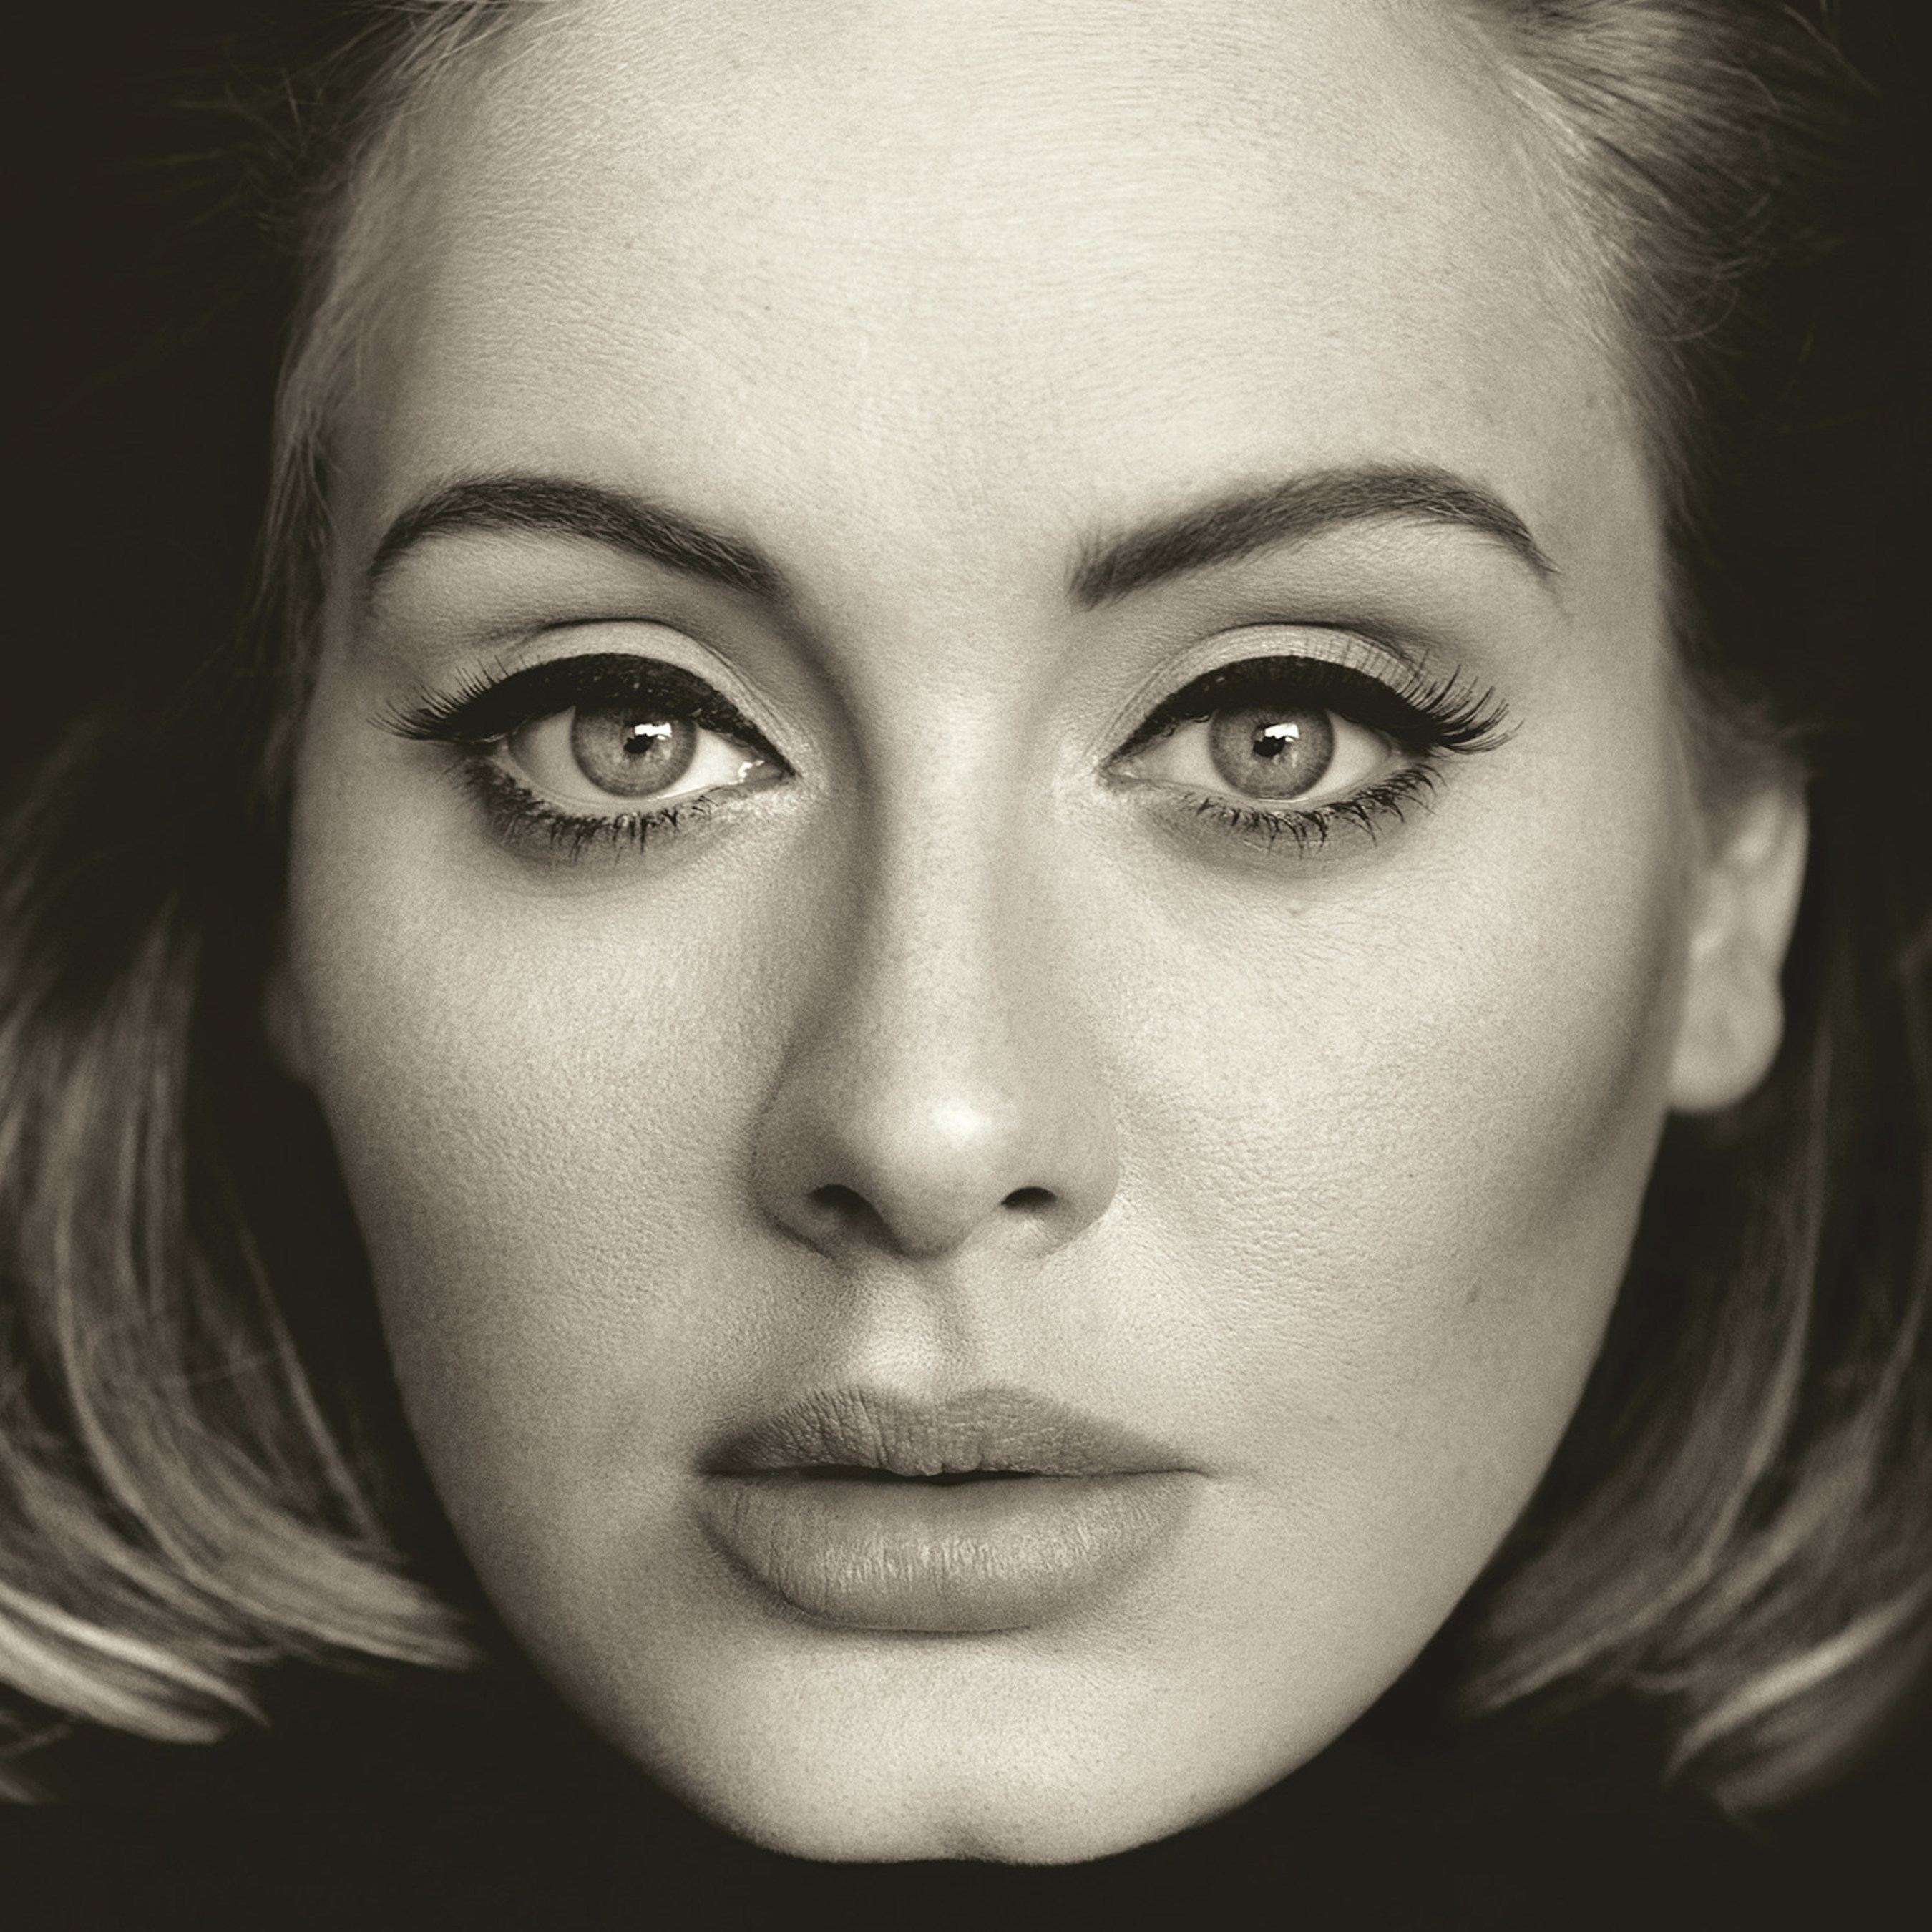 Adele Album "25" Released Globally November 20th